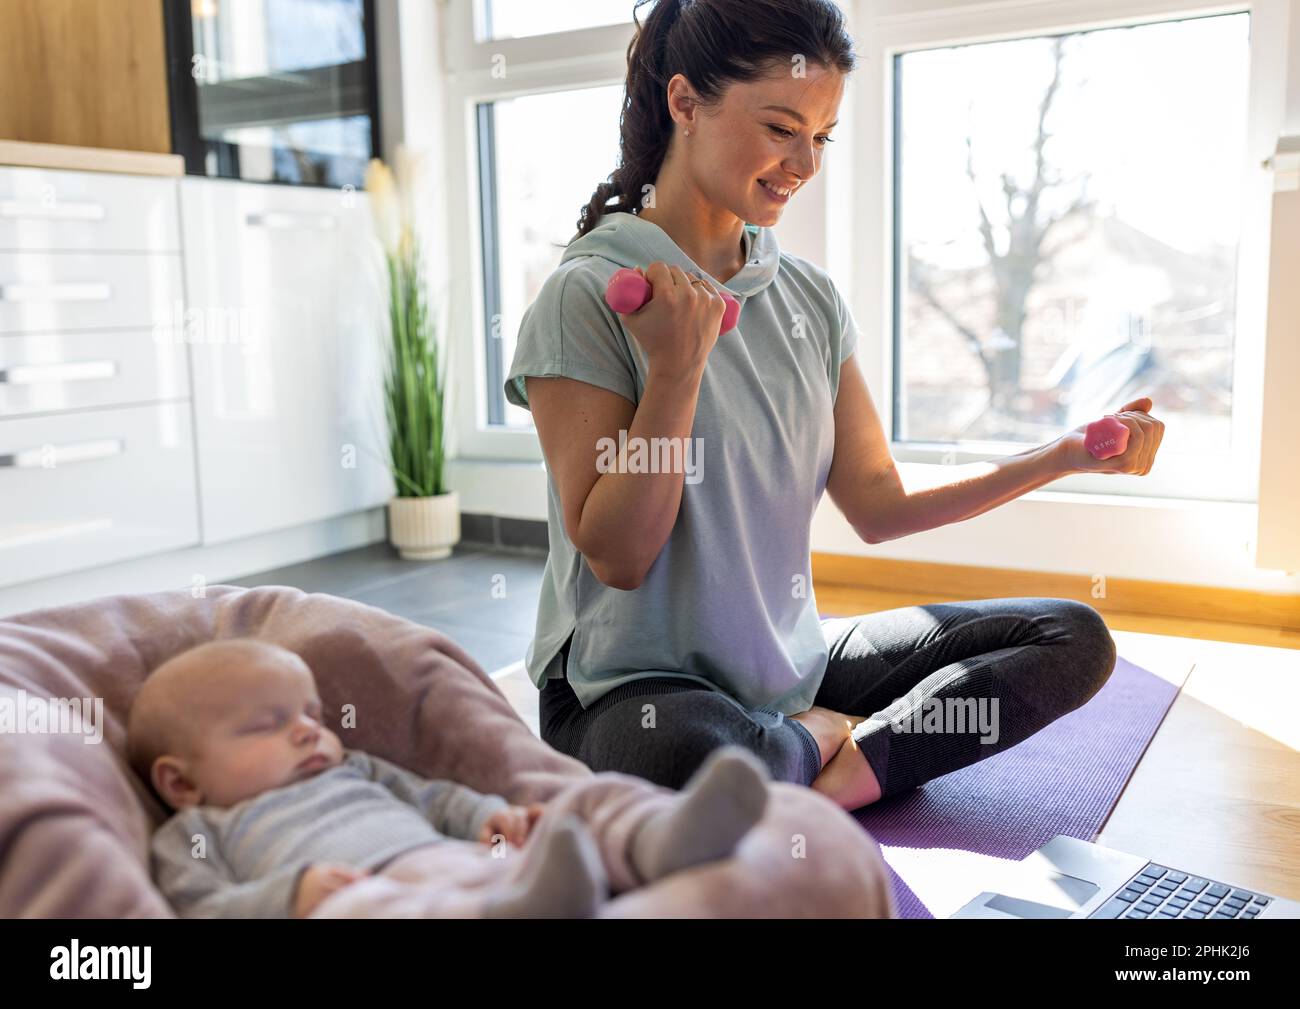 Die junge, hübsche Mutter schaut auf den Laptop und trainiert zu Hause mit Kurzhanteln auf der Yoga-Matte, während ihr neugeborenes Baby neben ihr schläft. Gesundes geistiges und Stockfoto